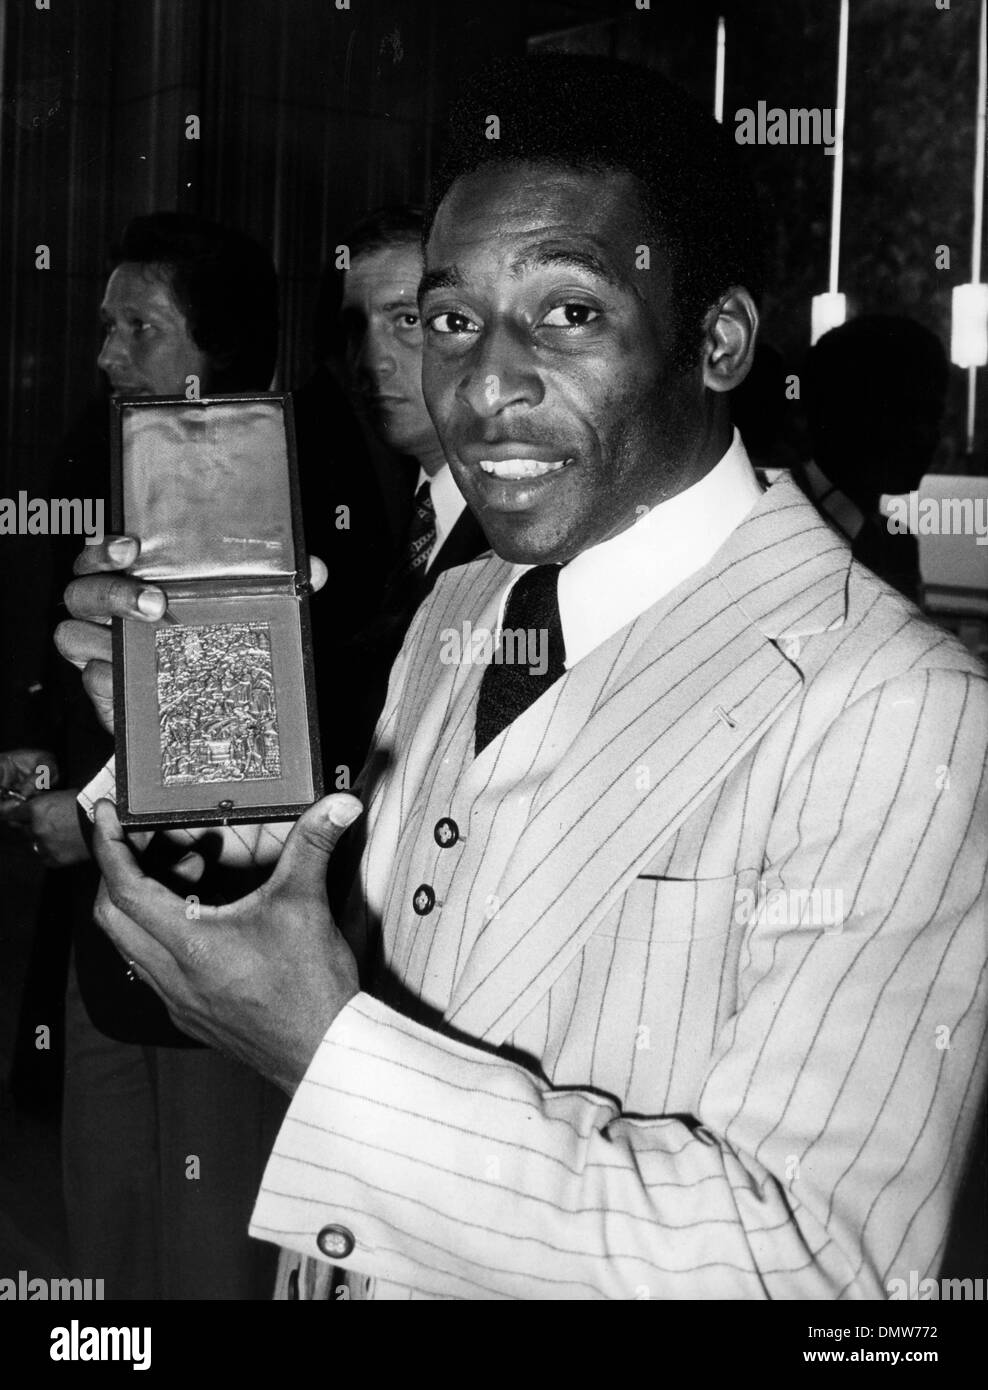 Sett. 14, 1976 - Parigi, Francia - calciatore brasiliano Pelé contiene fino una medaglia dopo essere stato onorato in un partito svoltasi presso l'Hotel de la Ville di Parigi. (Credito Immagine: © Keystone Pictures USA/ZUMAPRESS.com) Foto Stock